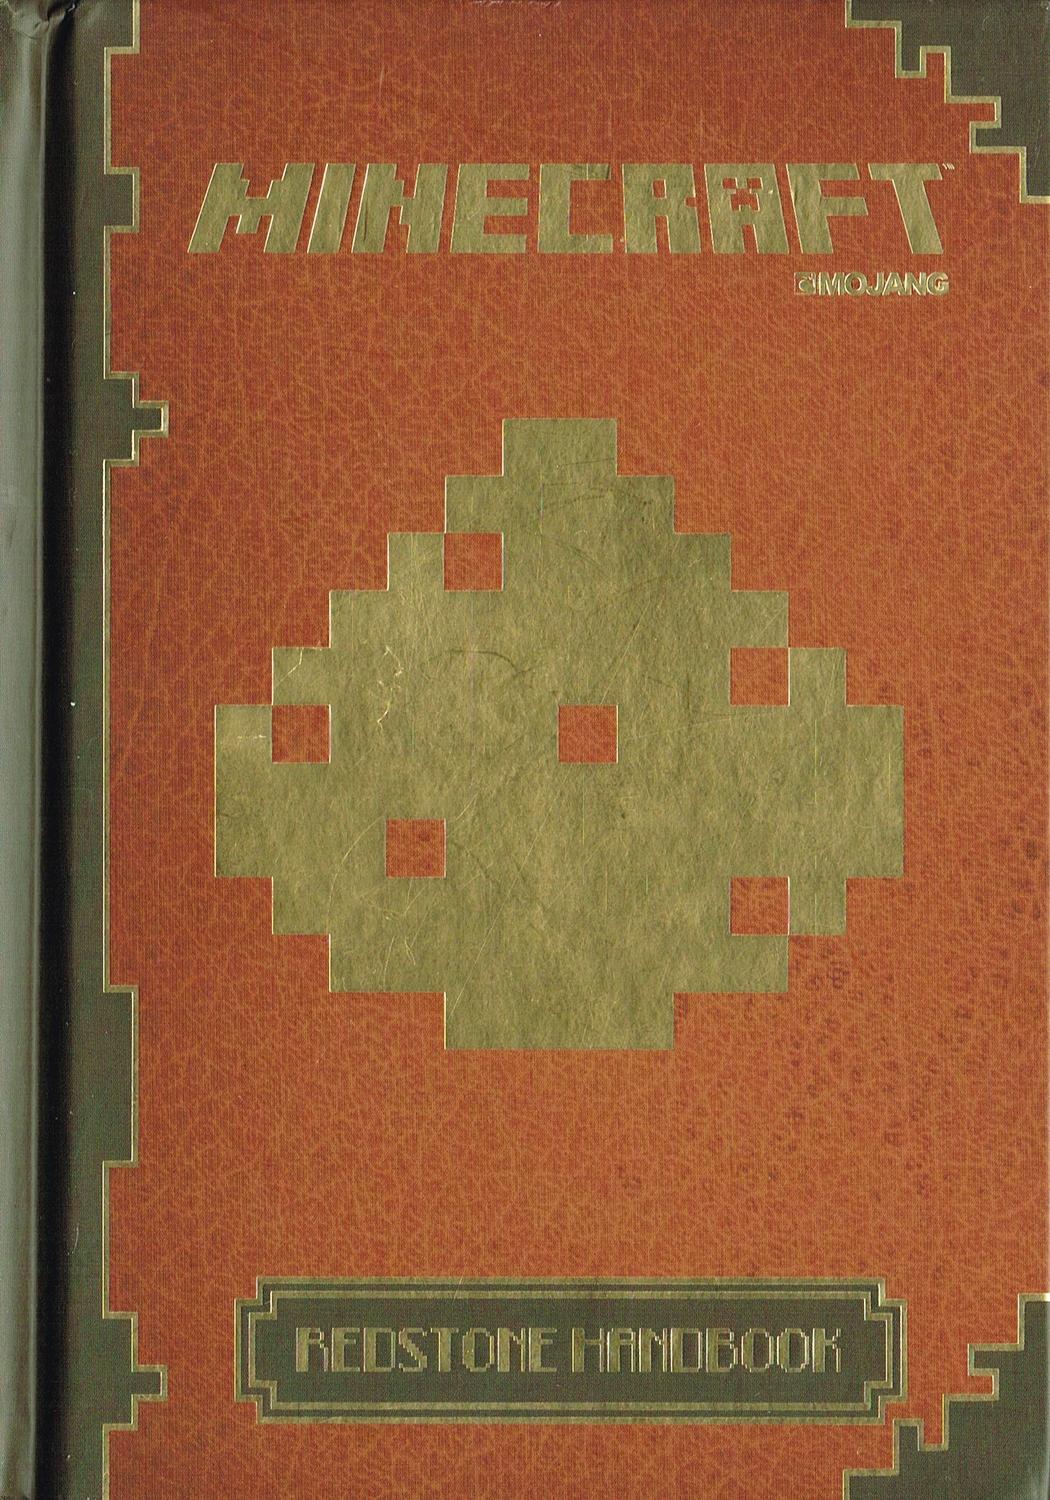 Суть книги майнкрафт. Книга редстоуна в майнкрафт. Руководство по красному камню Minecraft. Minecraft Redstone Handbook. Майнкрафт книга редстоуна руководство по красному камню.